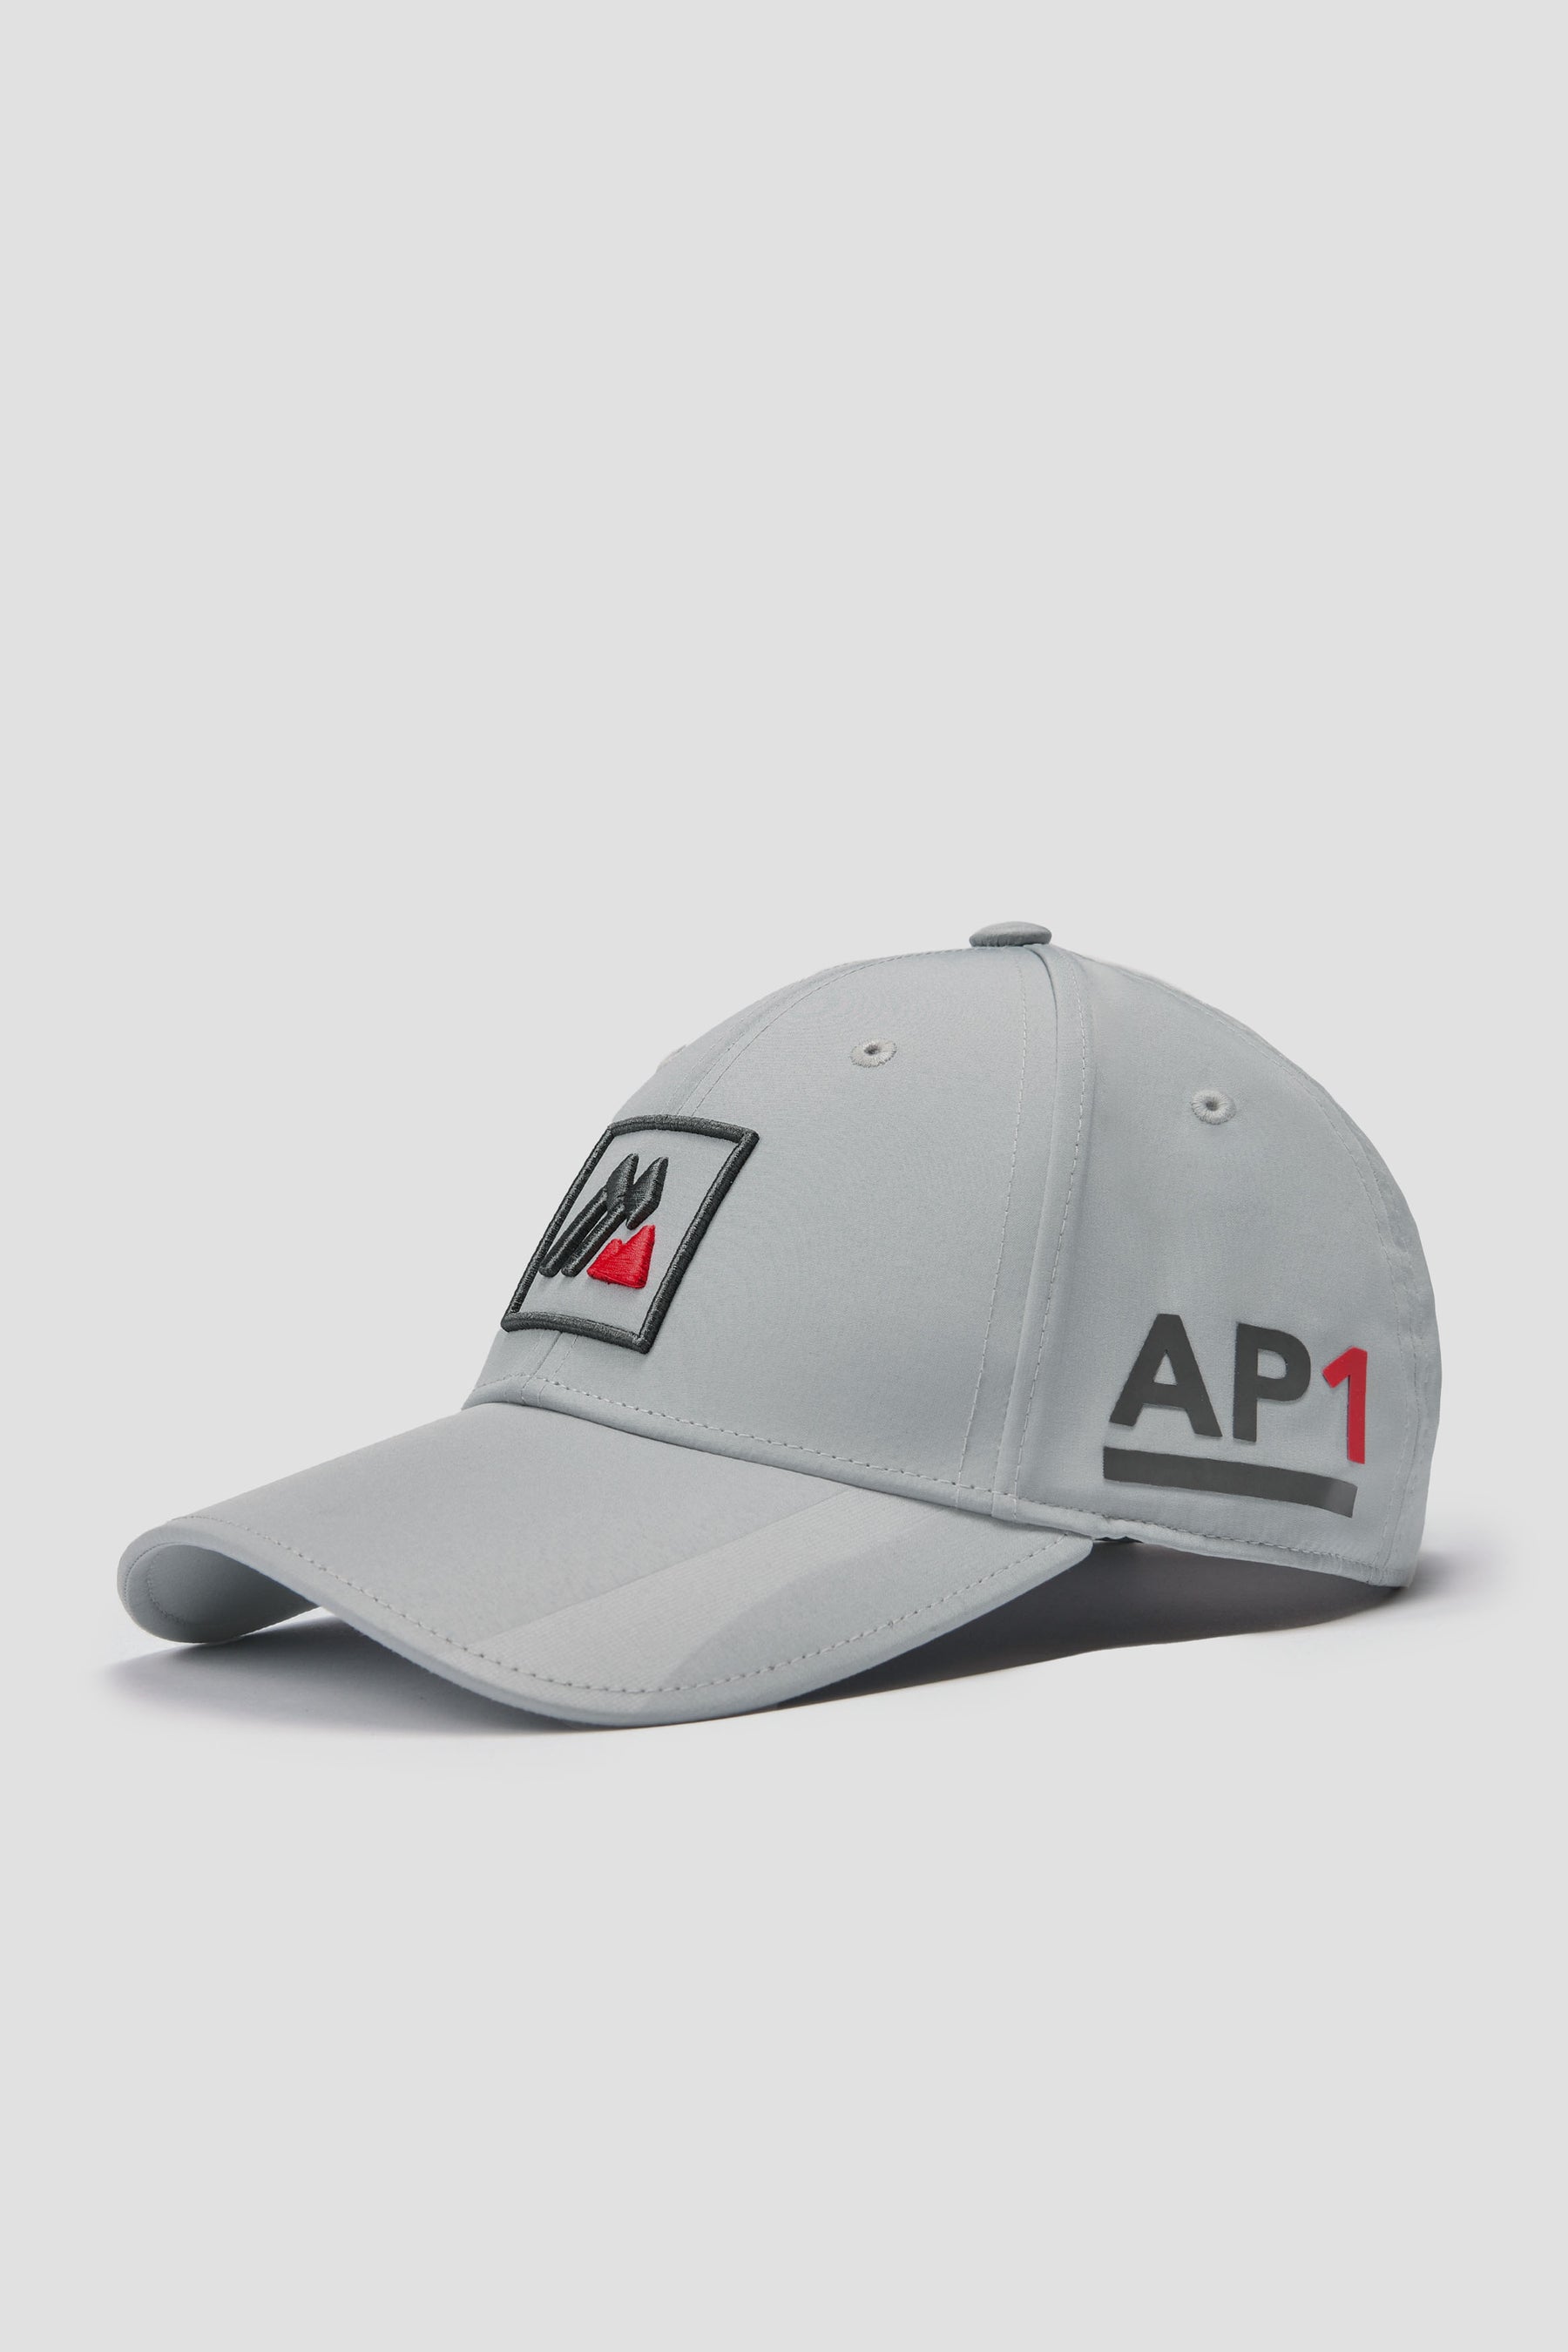 AP1 Tech Cap - Platinum Grey/Jet Grey/Cardinal Red